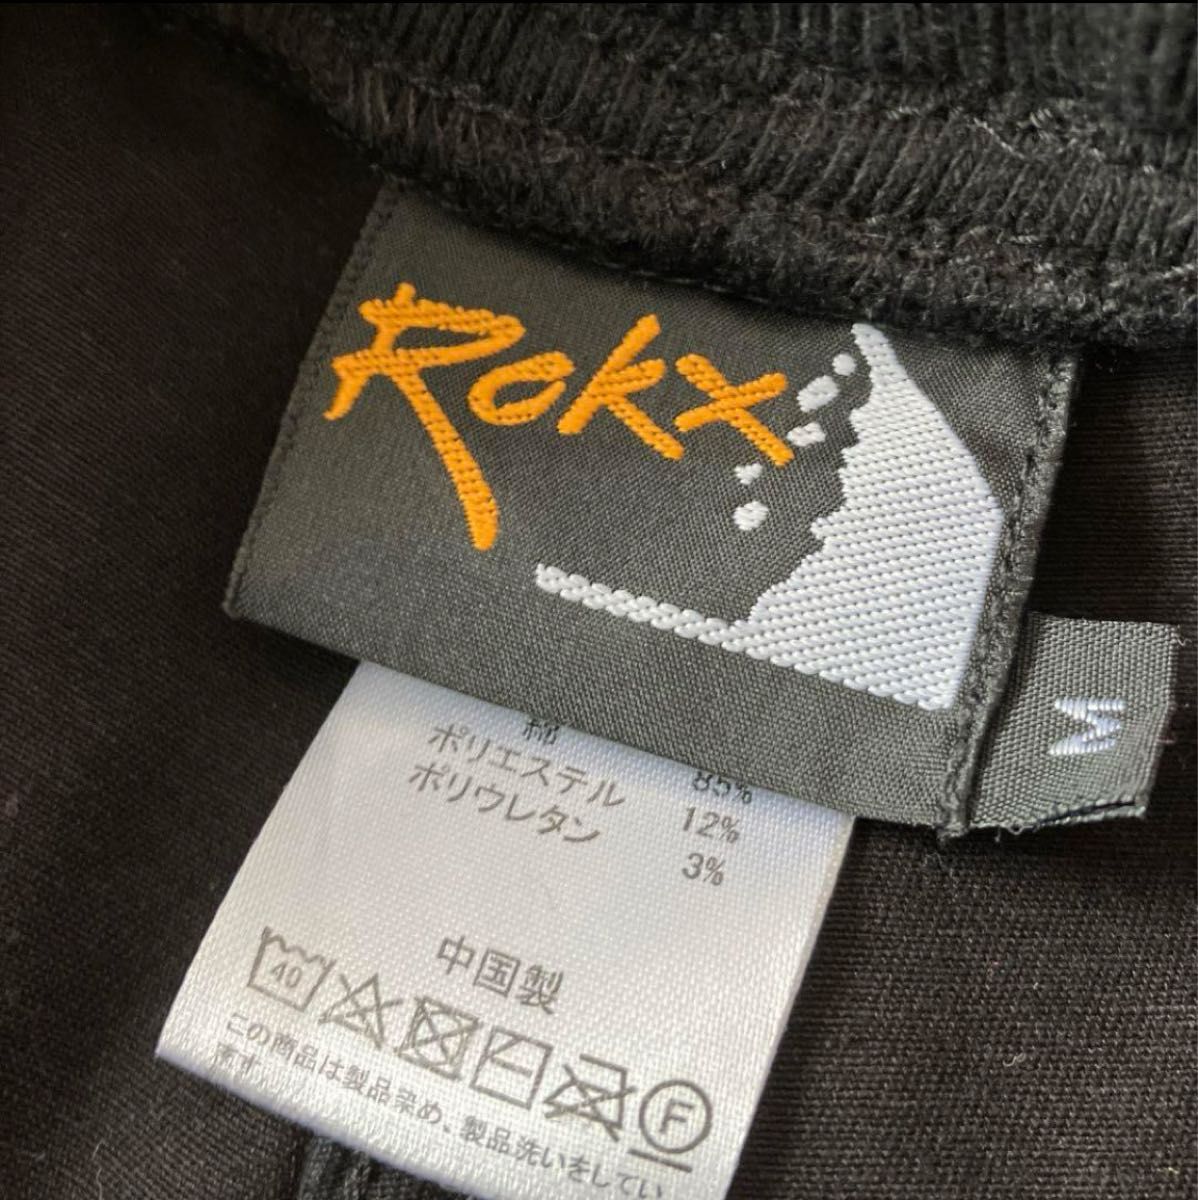 美品 ロックス ROKX  コットンウッド クロップドパンツ  クライミングパンツ  ブラック GRAMICCI